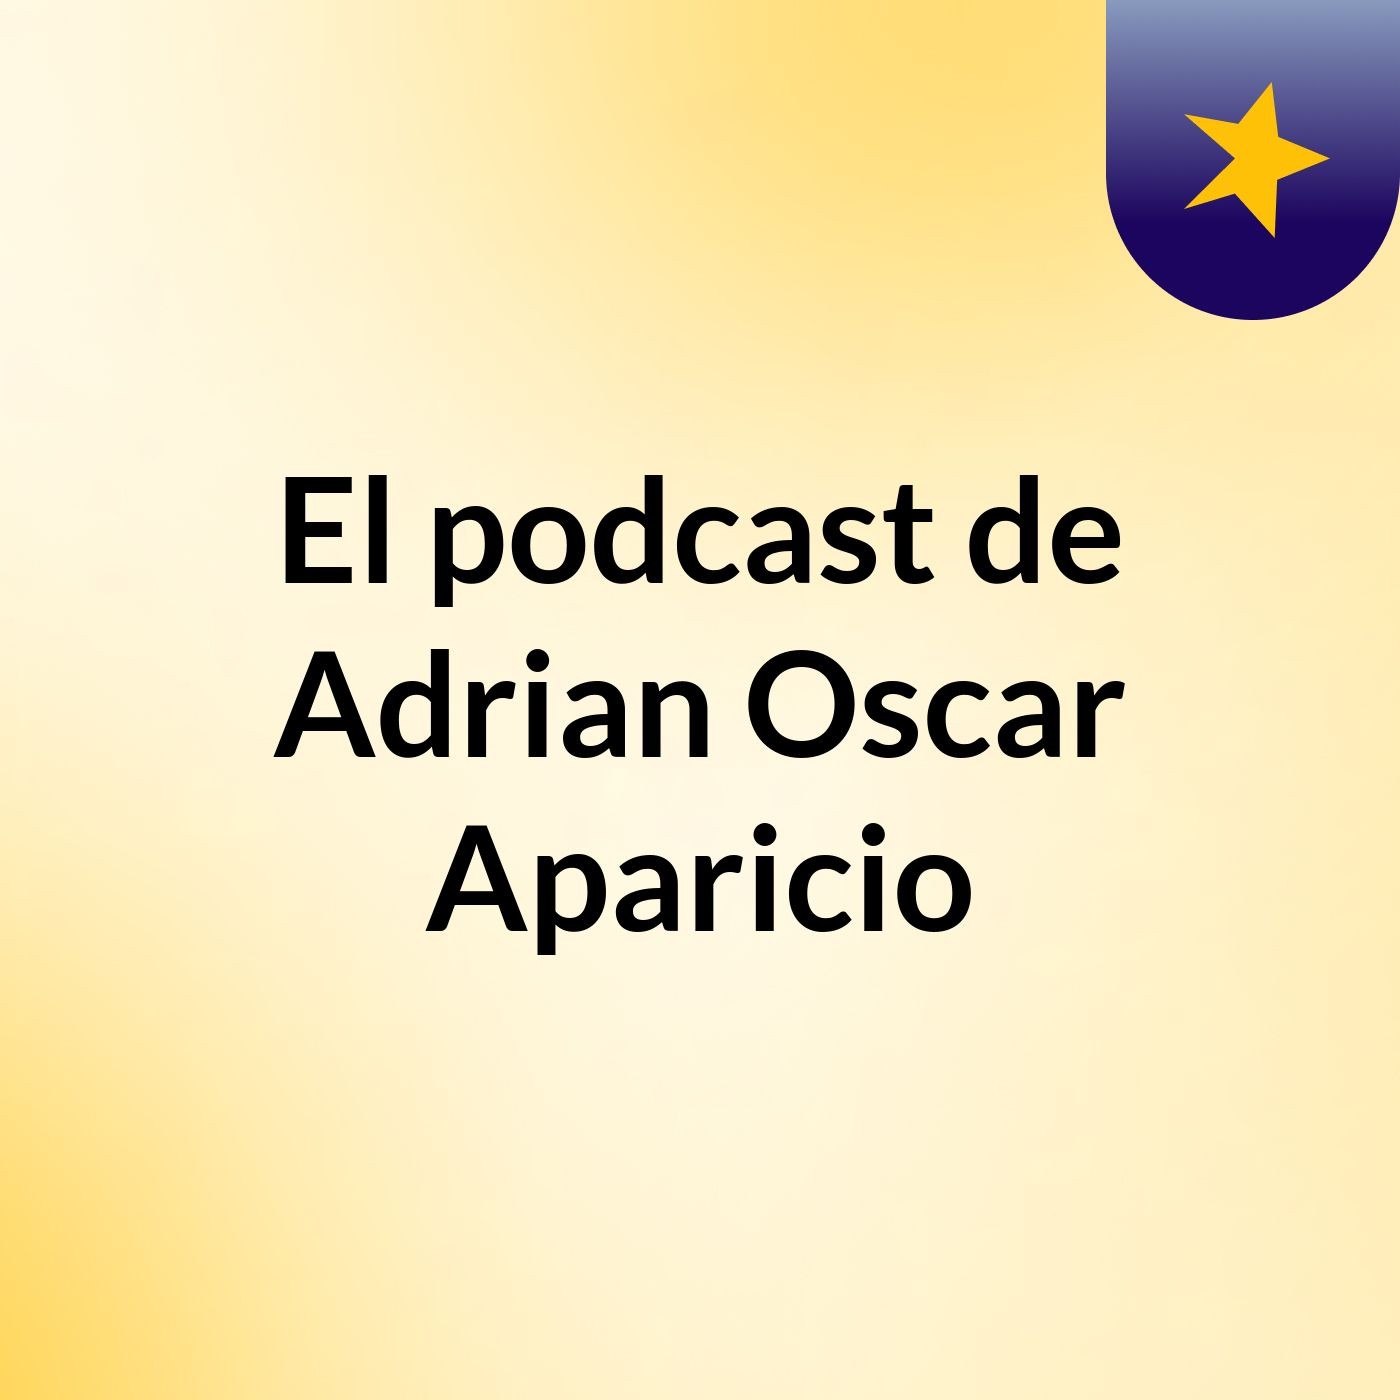 El podcast de Adrian Oscar Aparicio